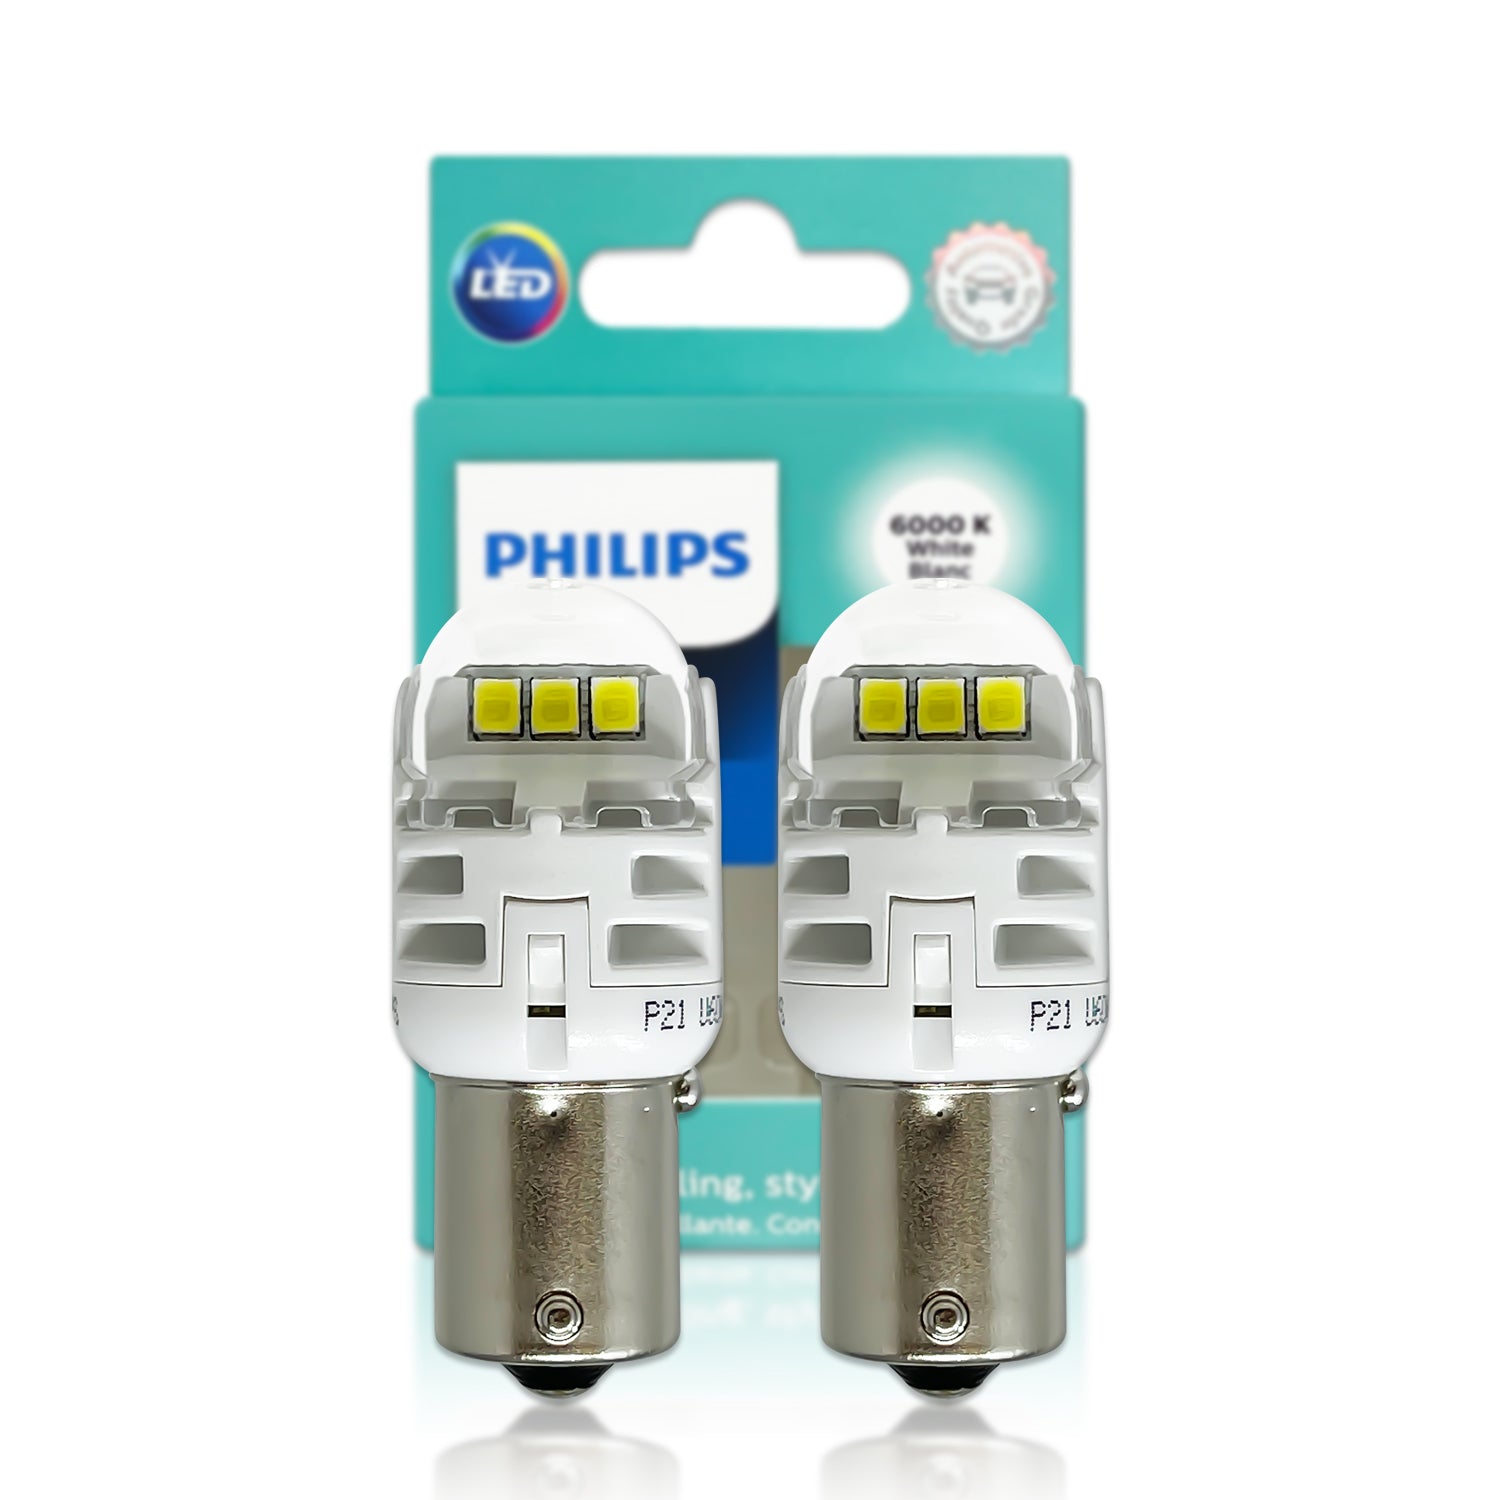  Philips 1156ALED Ultinon LED (Amber), 2 Pack : Automotive